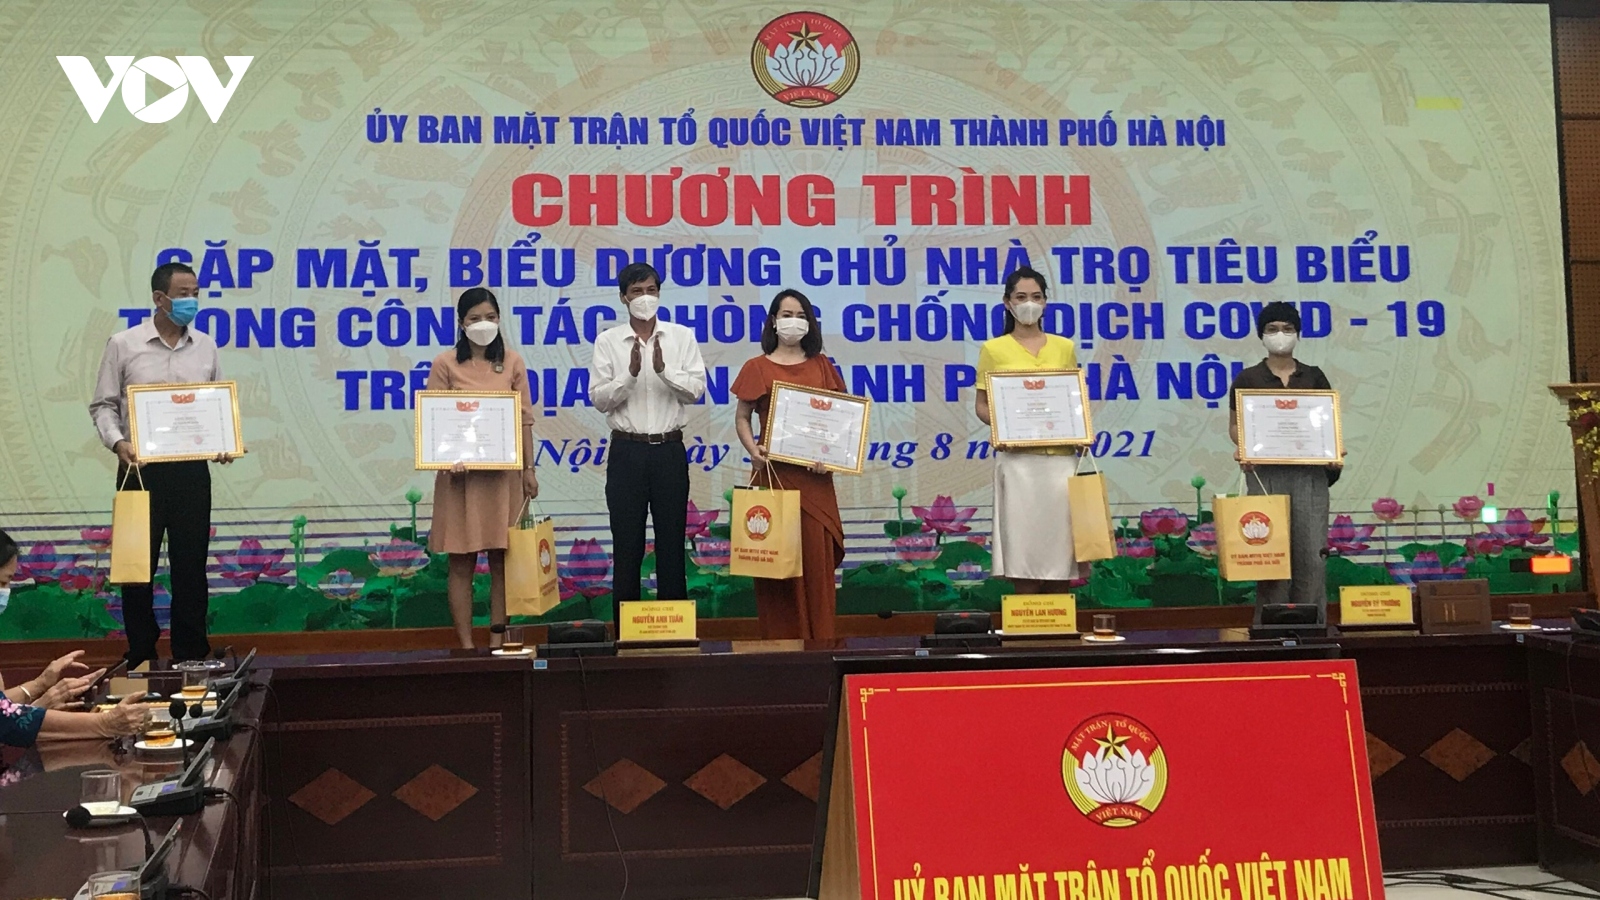 Biểu dương chủ nhà trọ tiêu biểu trong công tác phòng chống dịch tại Hà Nội